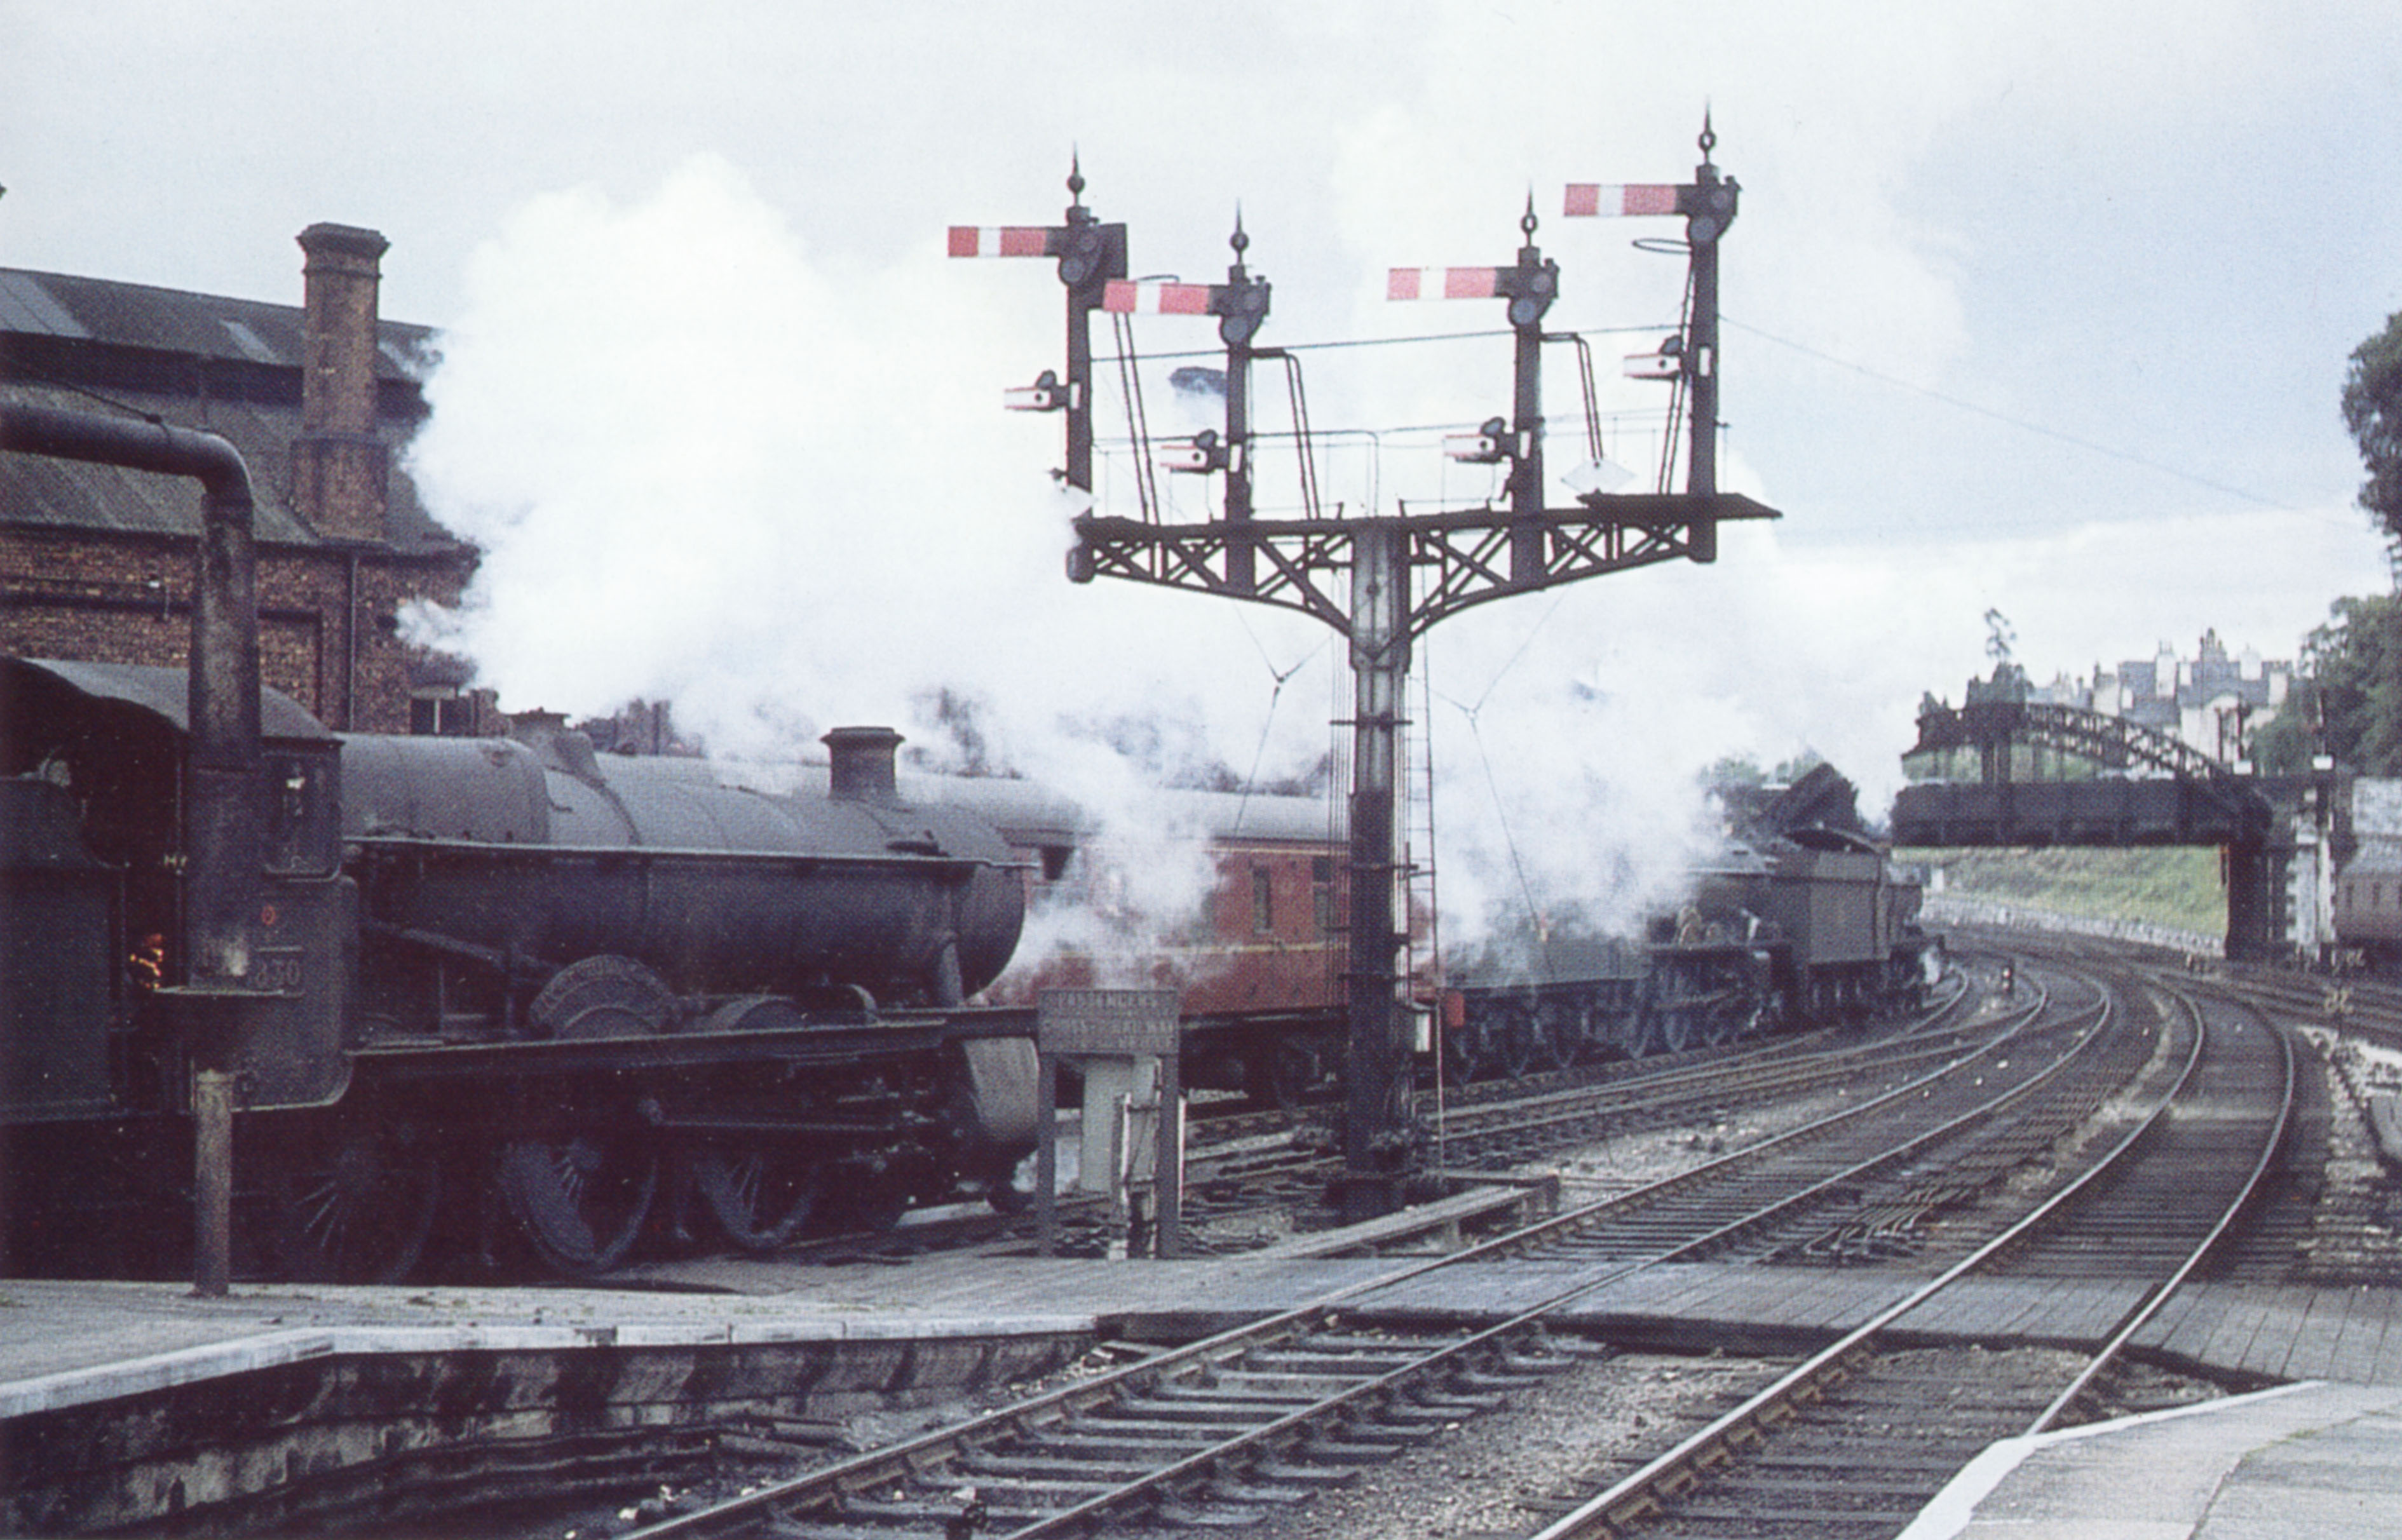 Alextrack: Model Railways: Newton Abbot: Prototype Photographs